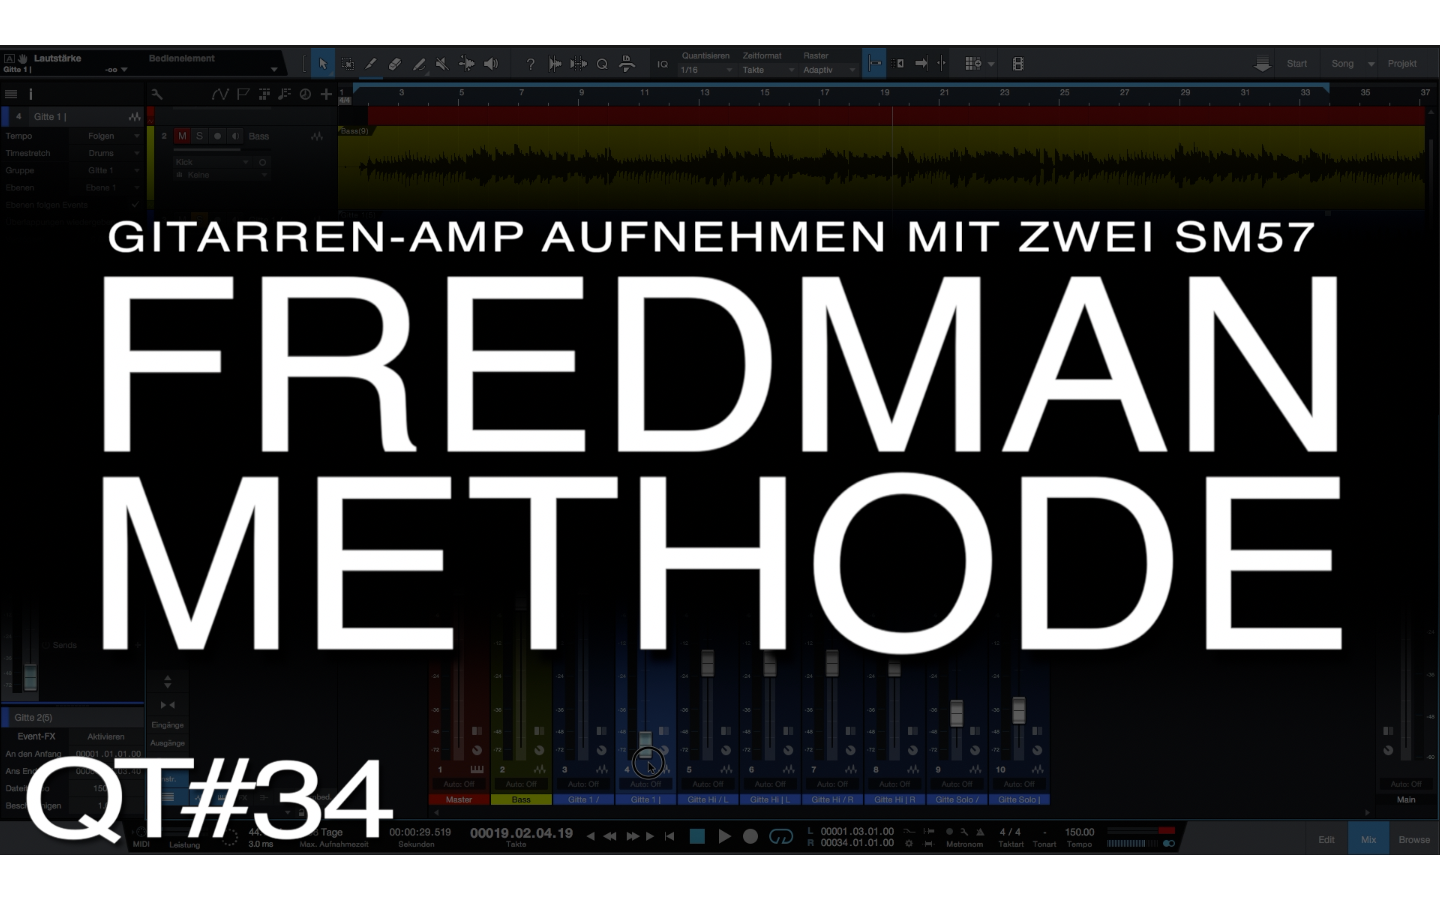 Die Fredman-Methode mit zwei SM57 Mikrofonen